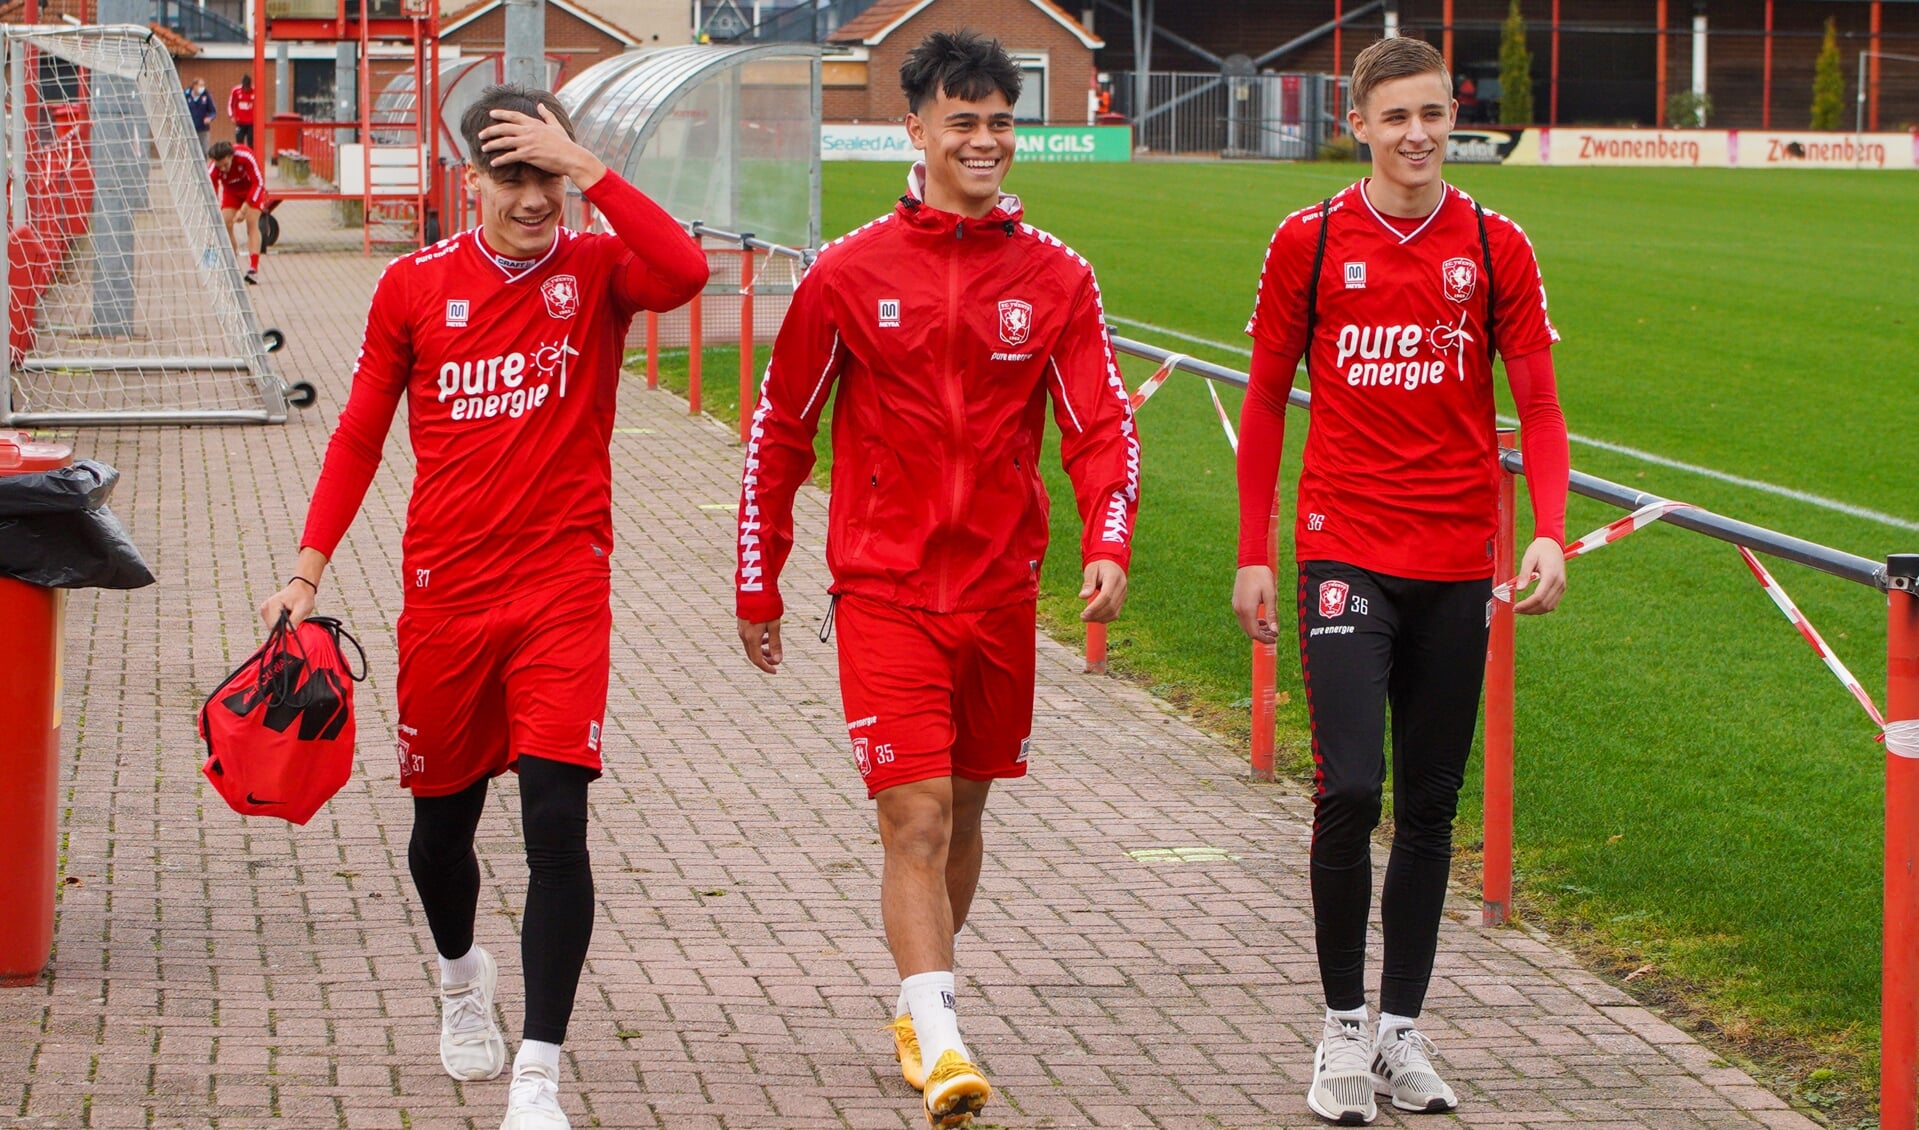 Mees (midden) met zijn teamgenoten Thijs en Max - FC Twente